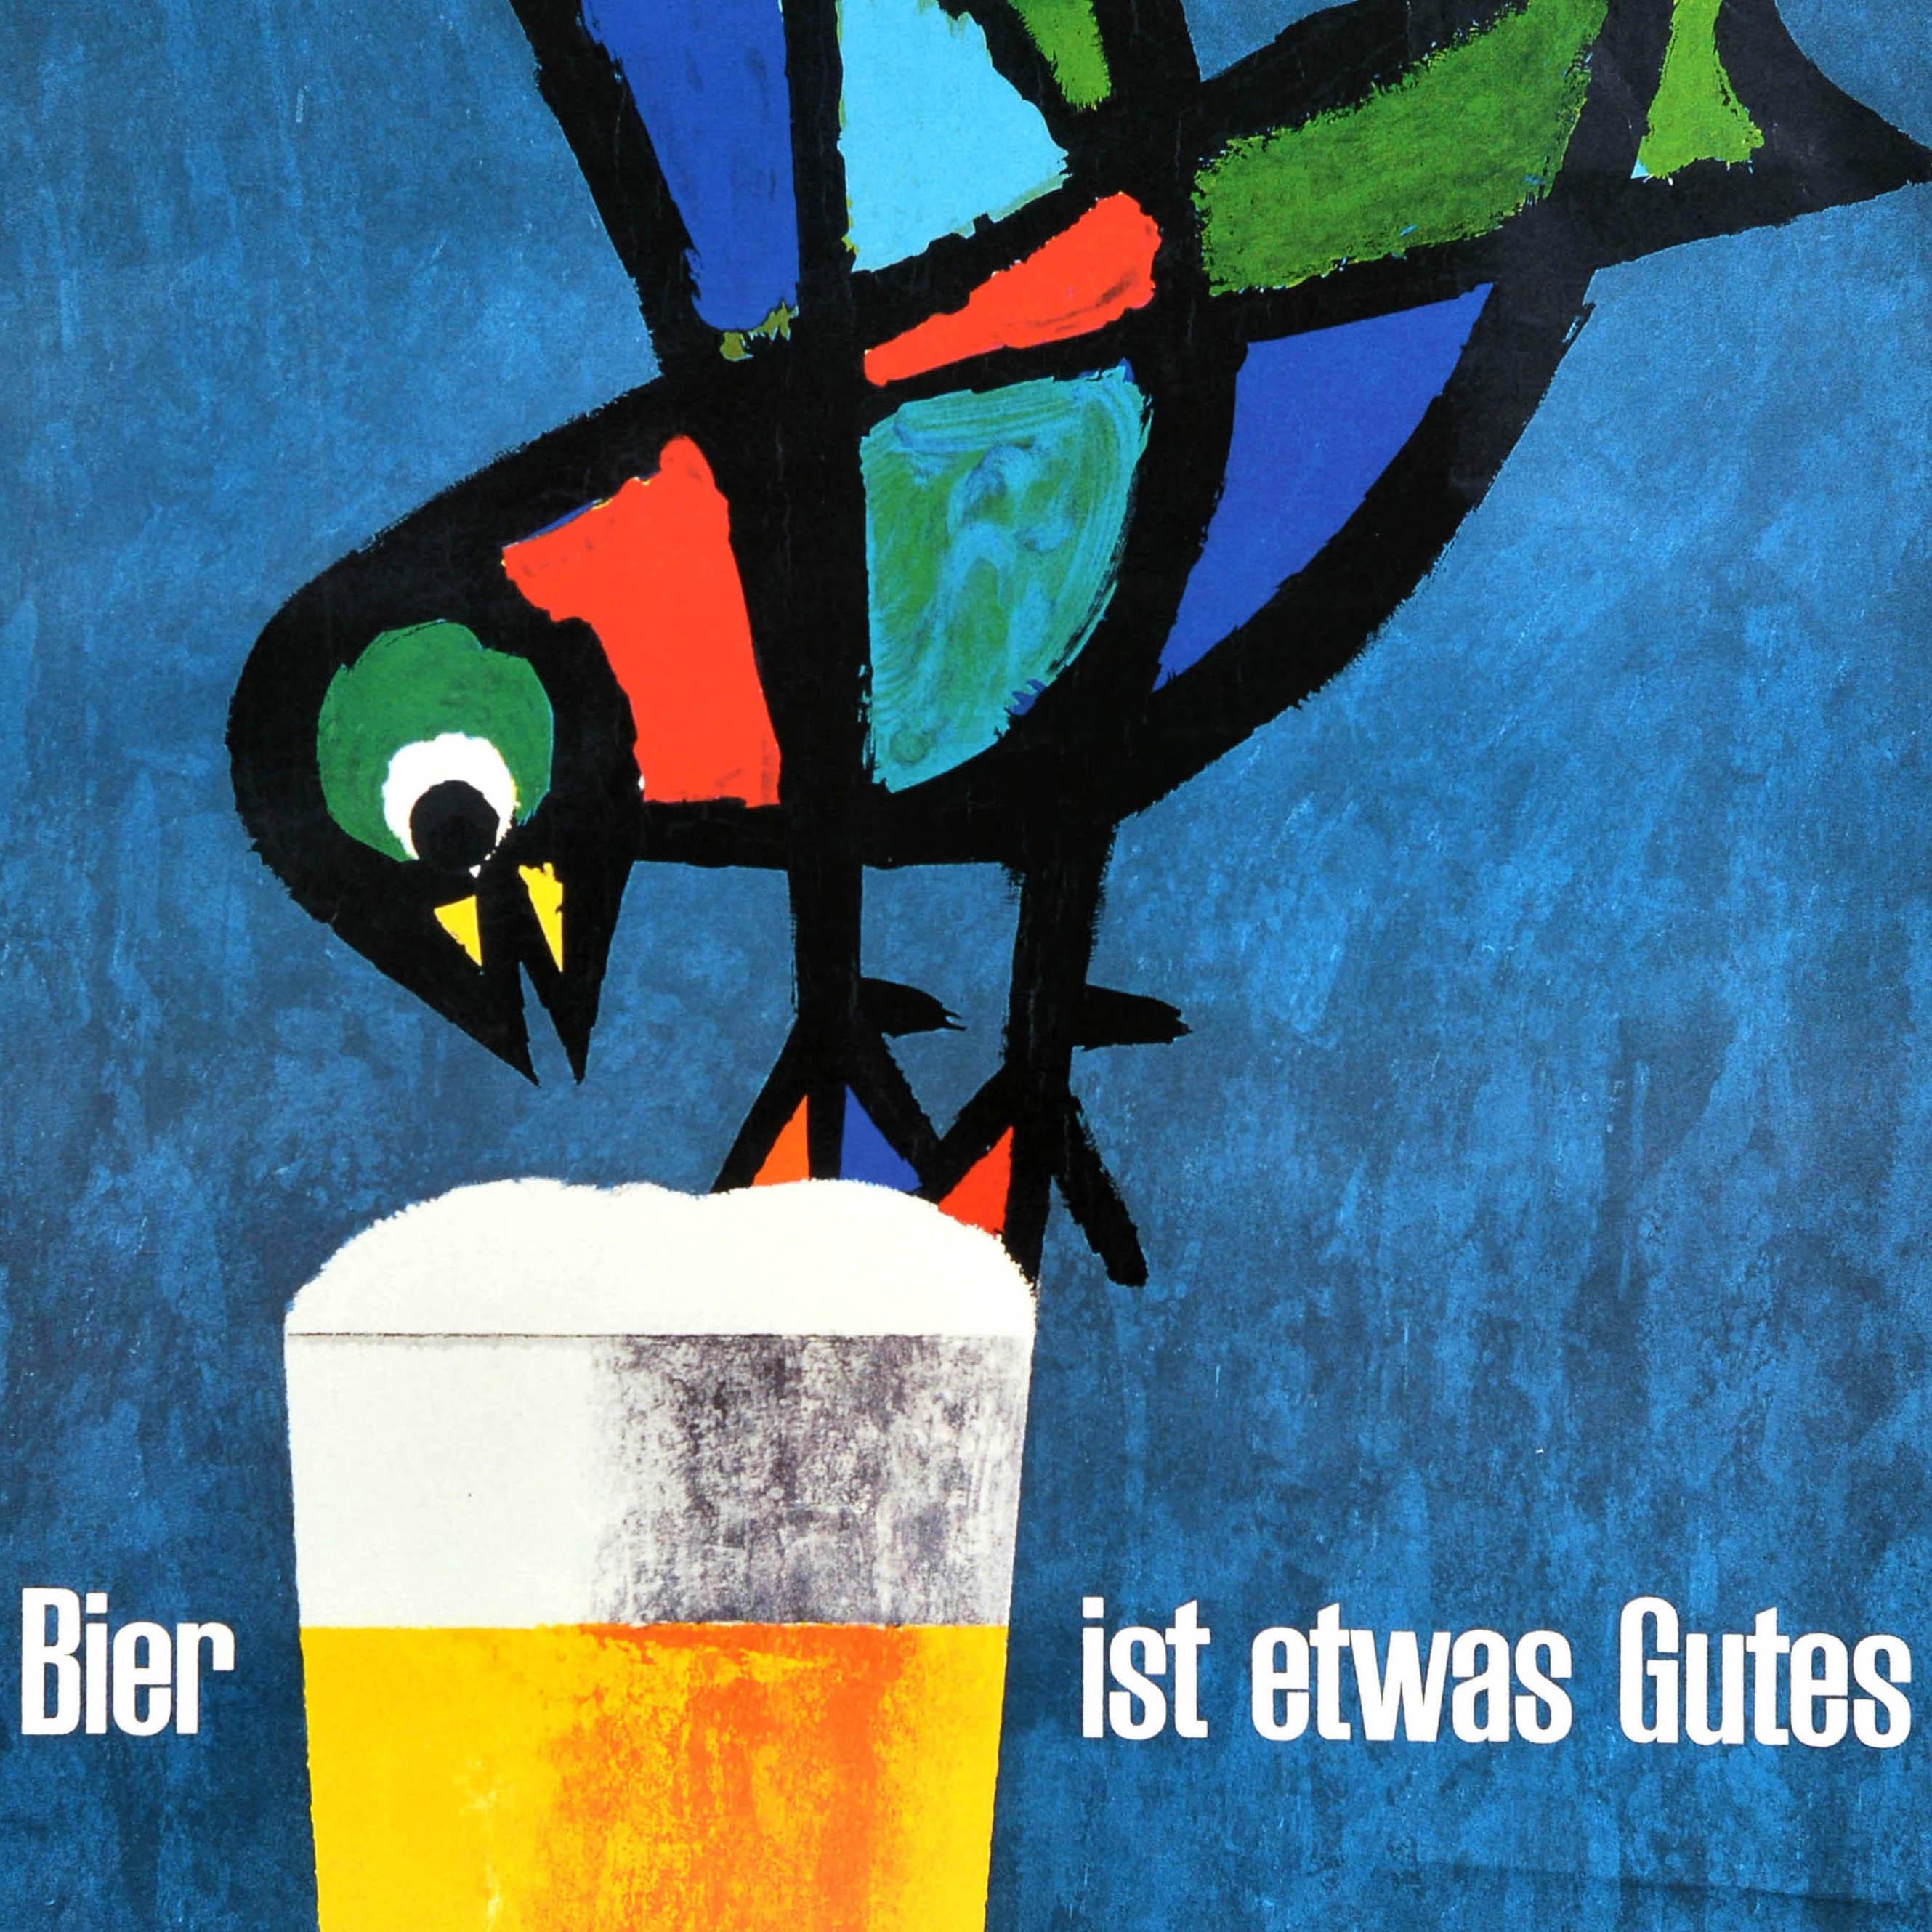 Original Vintage-Getränke-Werbeplakat - Bier ist etwas Gutes - mit einer lustigen Illustration des Schweizer Grafikers Celestino Piatti (1922-2007), die einen bunten Vogel auf einem Glas Bier vor blauem Hintergrund zeigt. Ausgezeichneter Zustand.